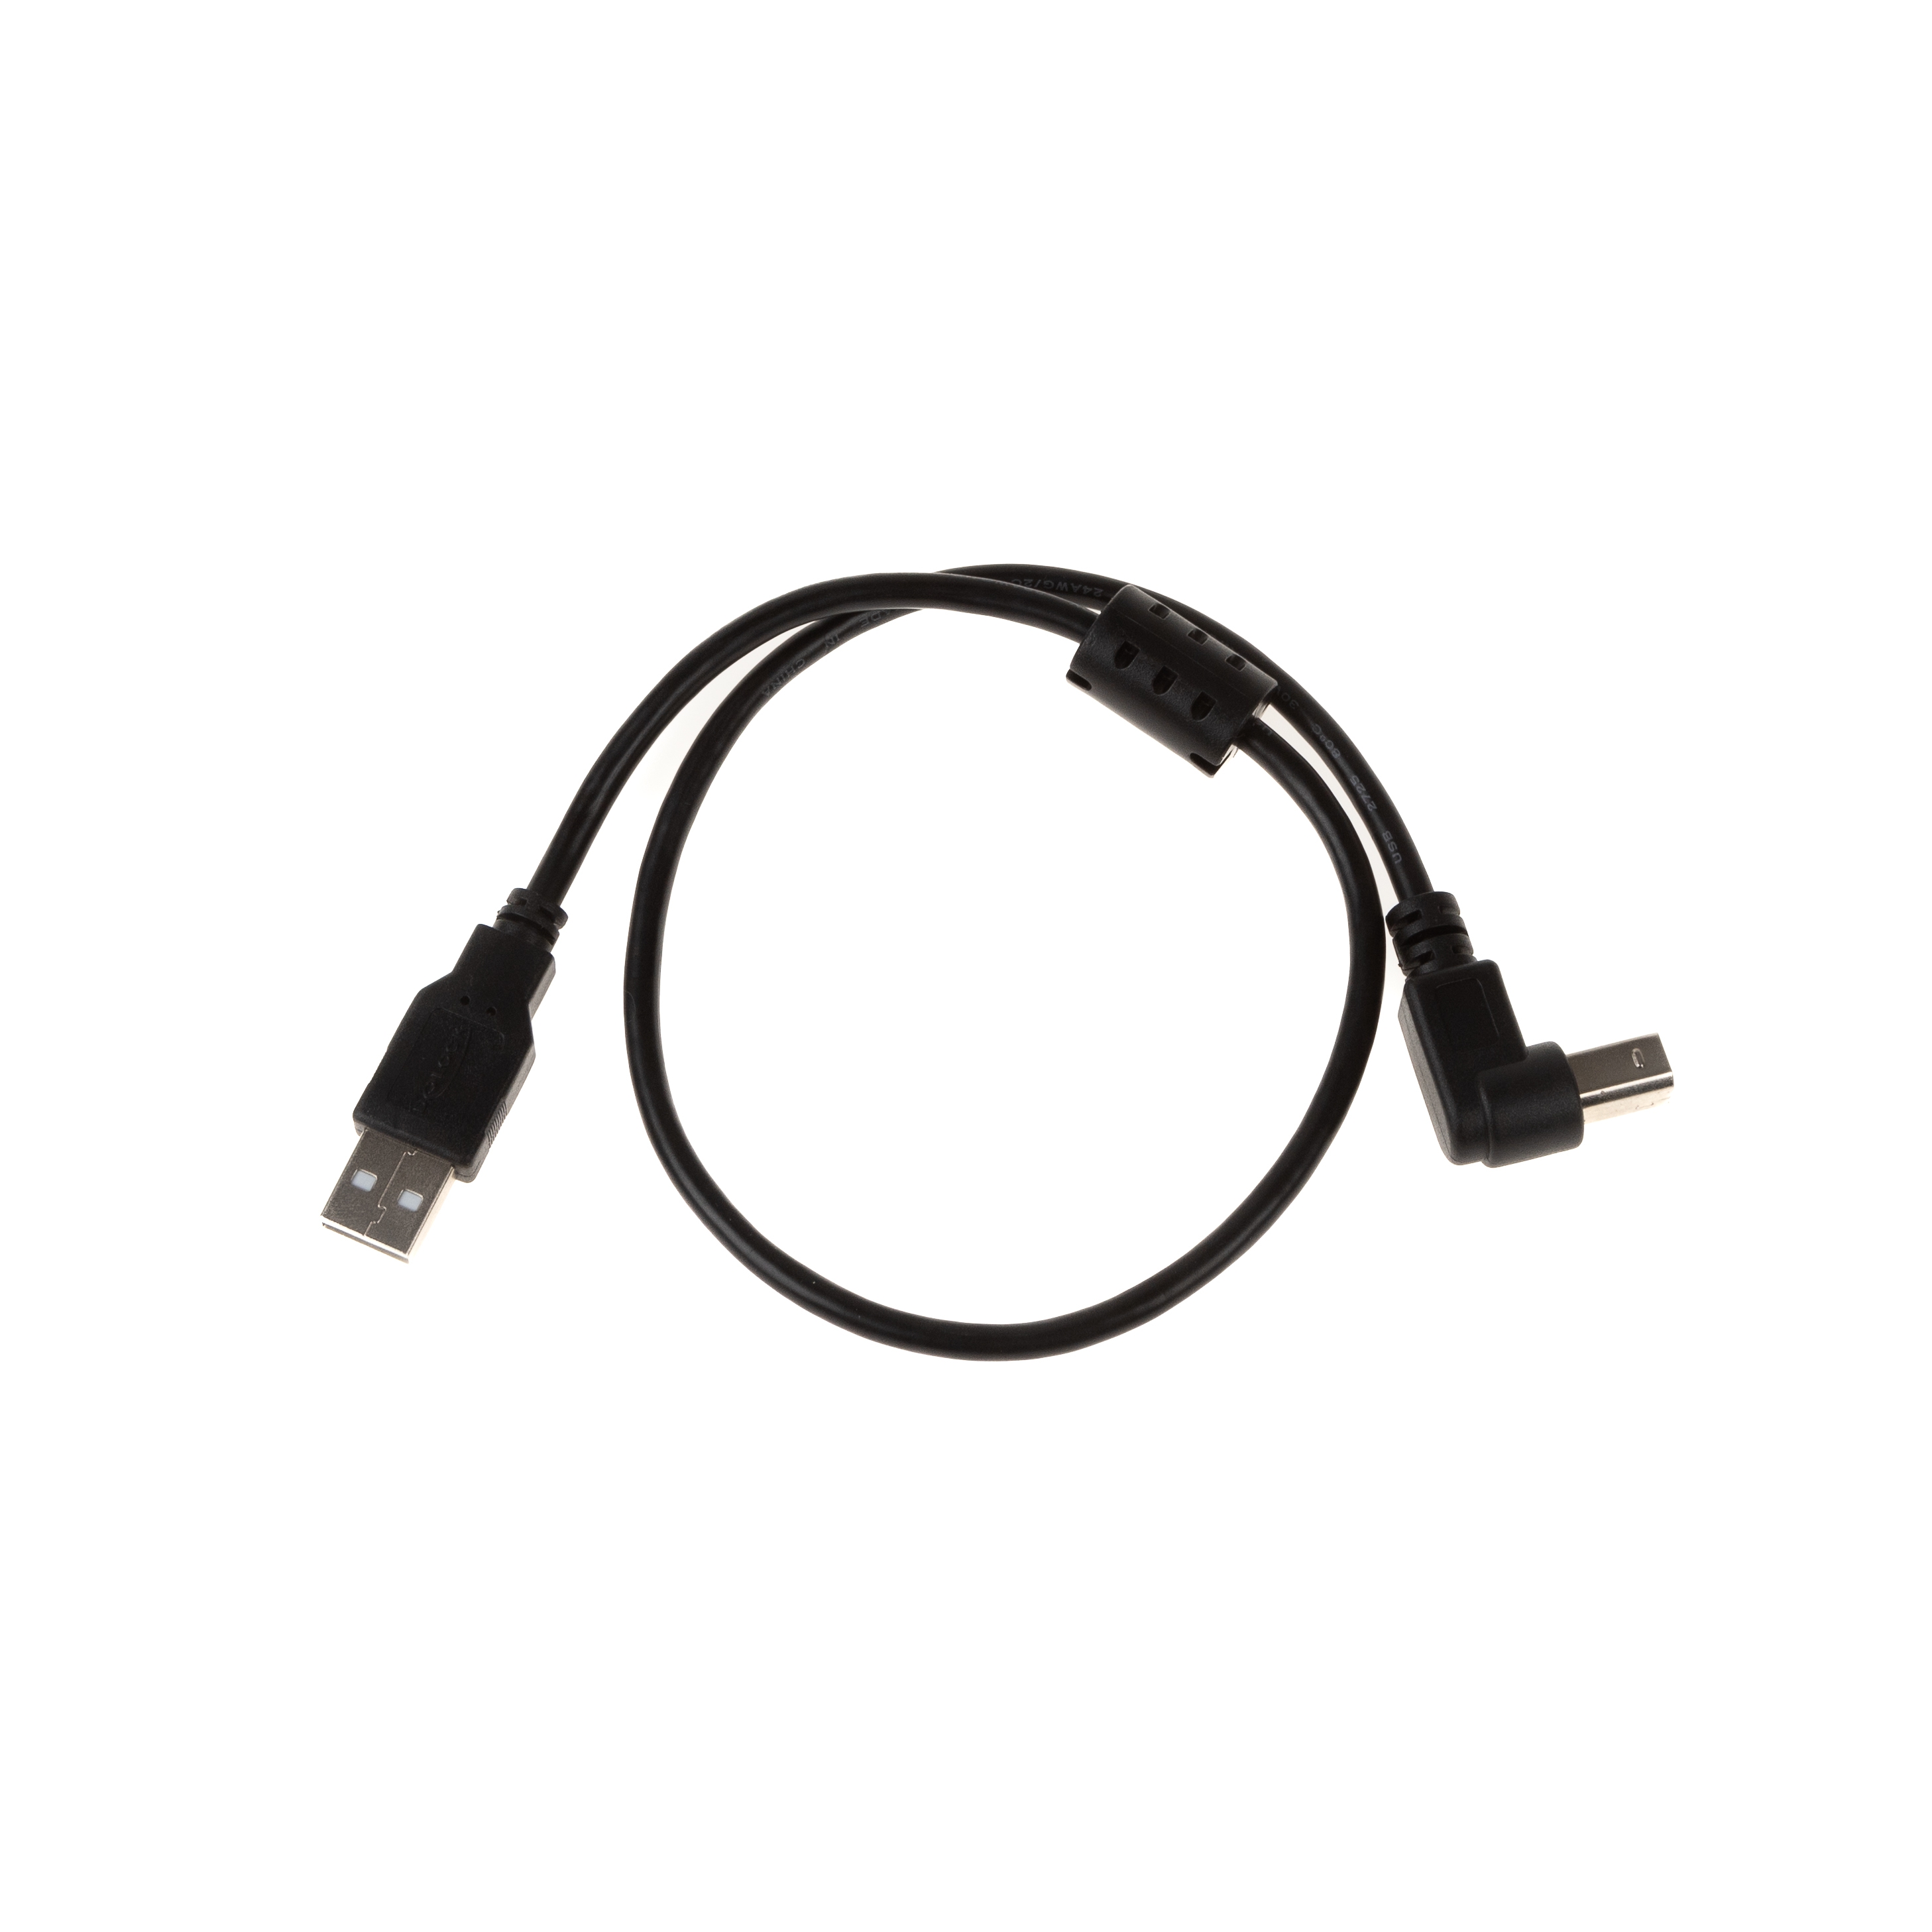 Câble USB 2.0 avec connecteur B coudé 90° VERS LE BAS, noyau de ferrite, 50cm